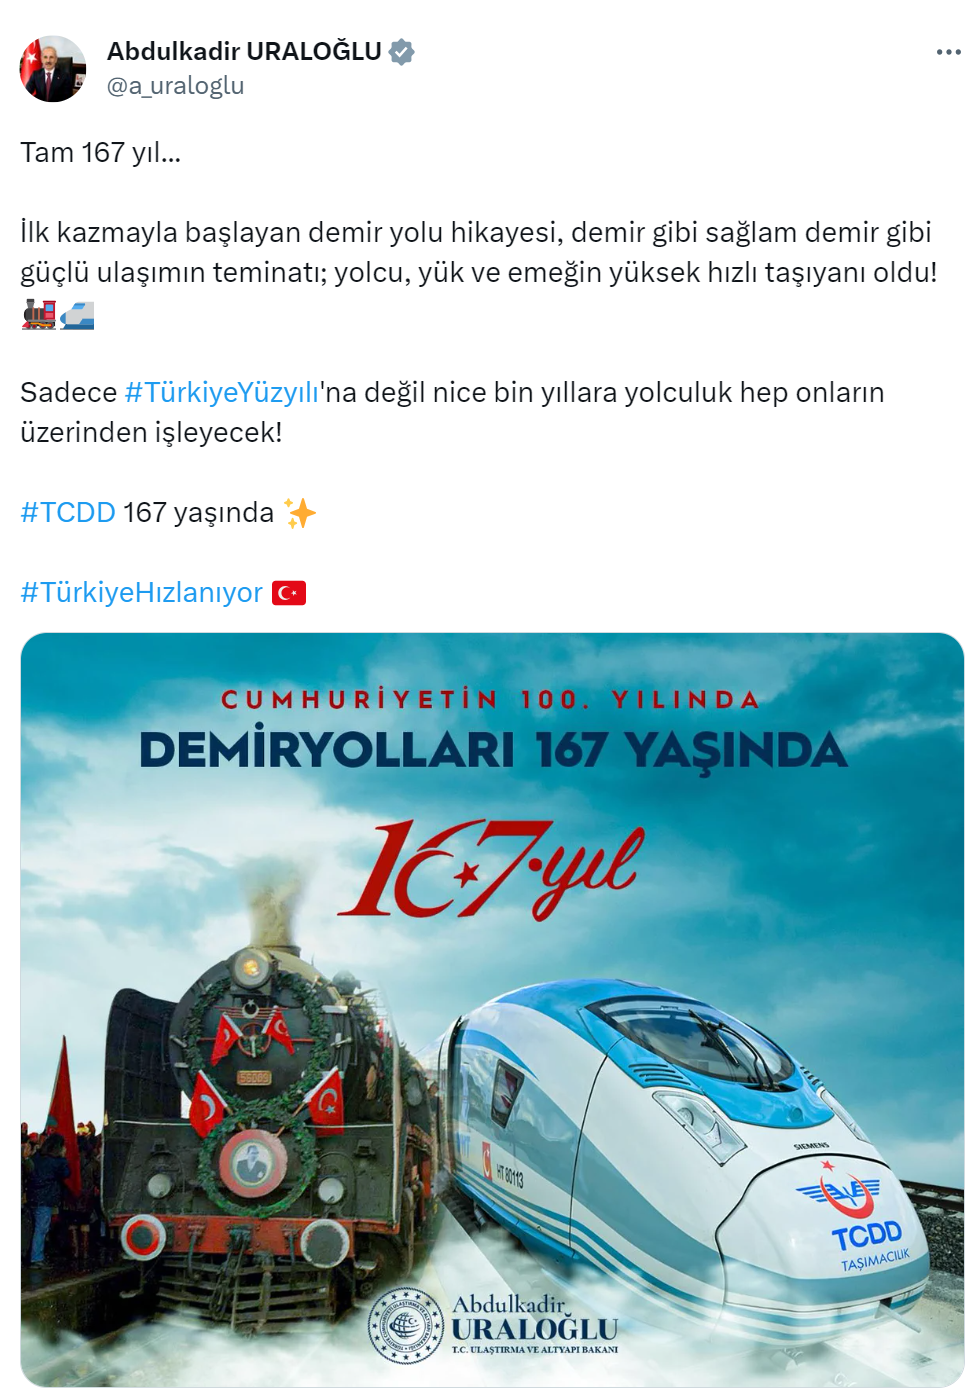 Bakan Uraloğlu, TCDD’nin 167 yılını kutladı